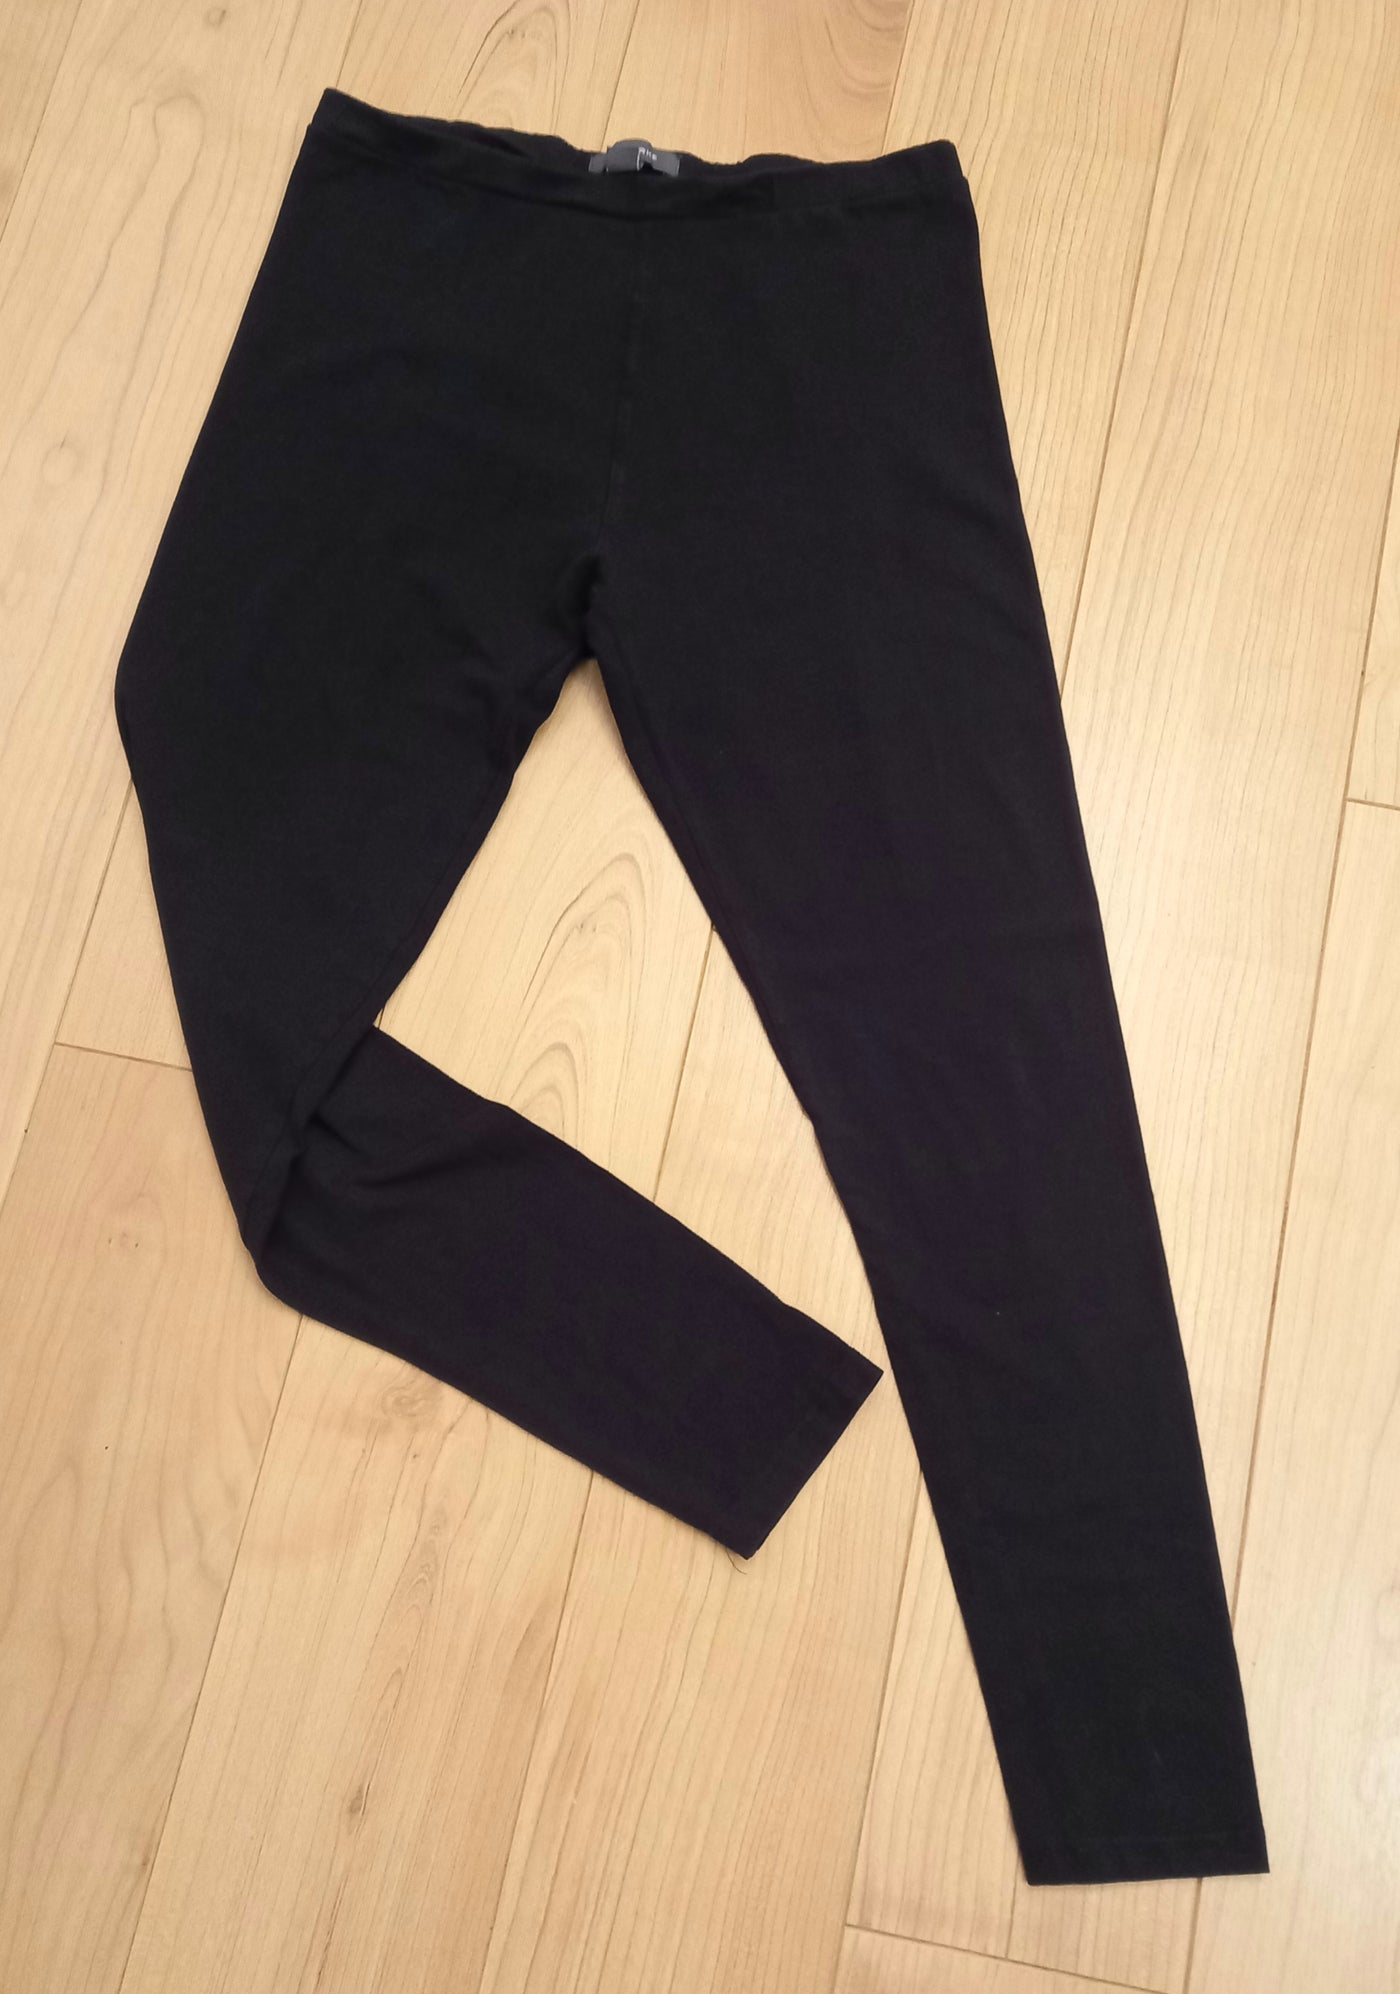 Primark Black Leggings - Size M (Approx. UK 10) – Dress My Bump Preloved